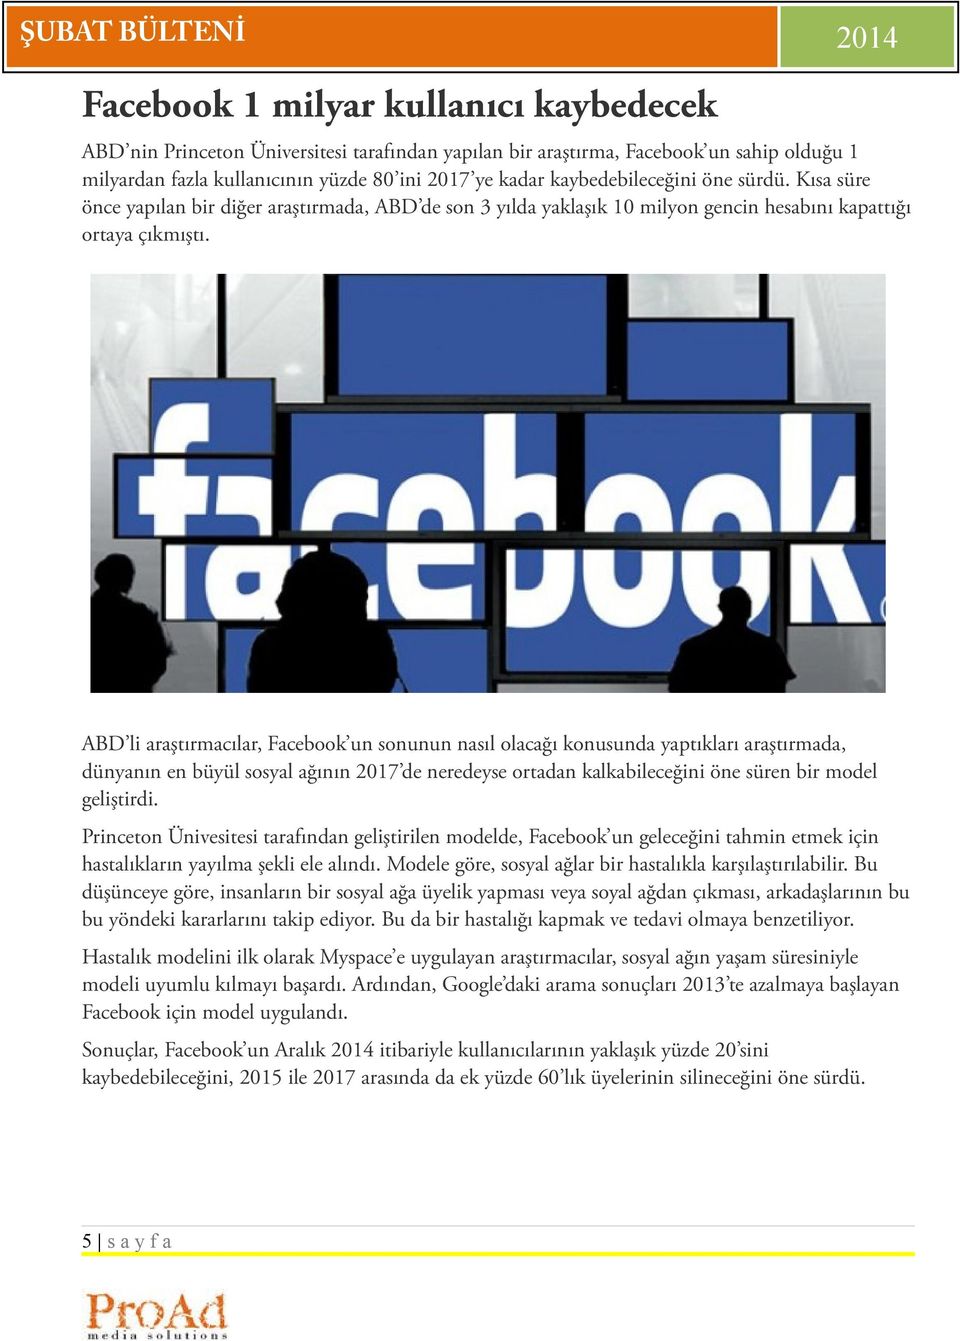 ABD li araştırmacılar, Facebook un sonunun nasıl olacağı konusunda yaptıkları araştırmada, dünyanın en büyül sosyal ağının 2017 de neredeyse ortadan kalkabileceğini öne süren bir model geliştirdi.